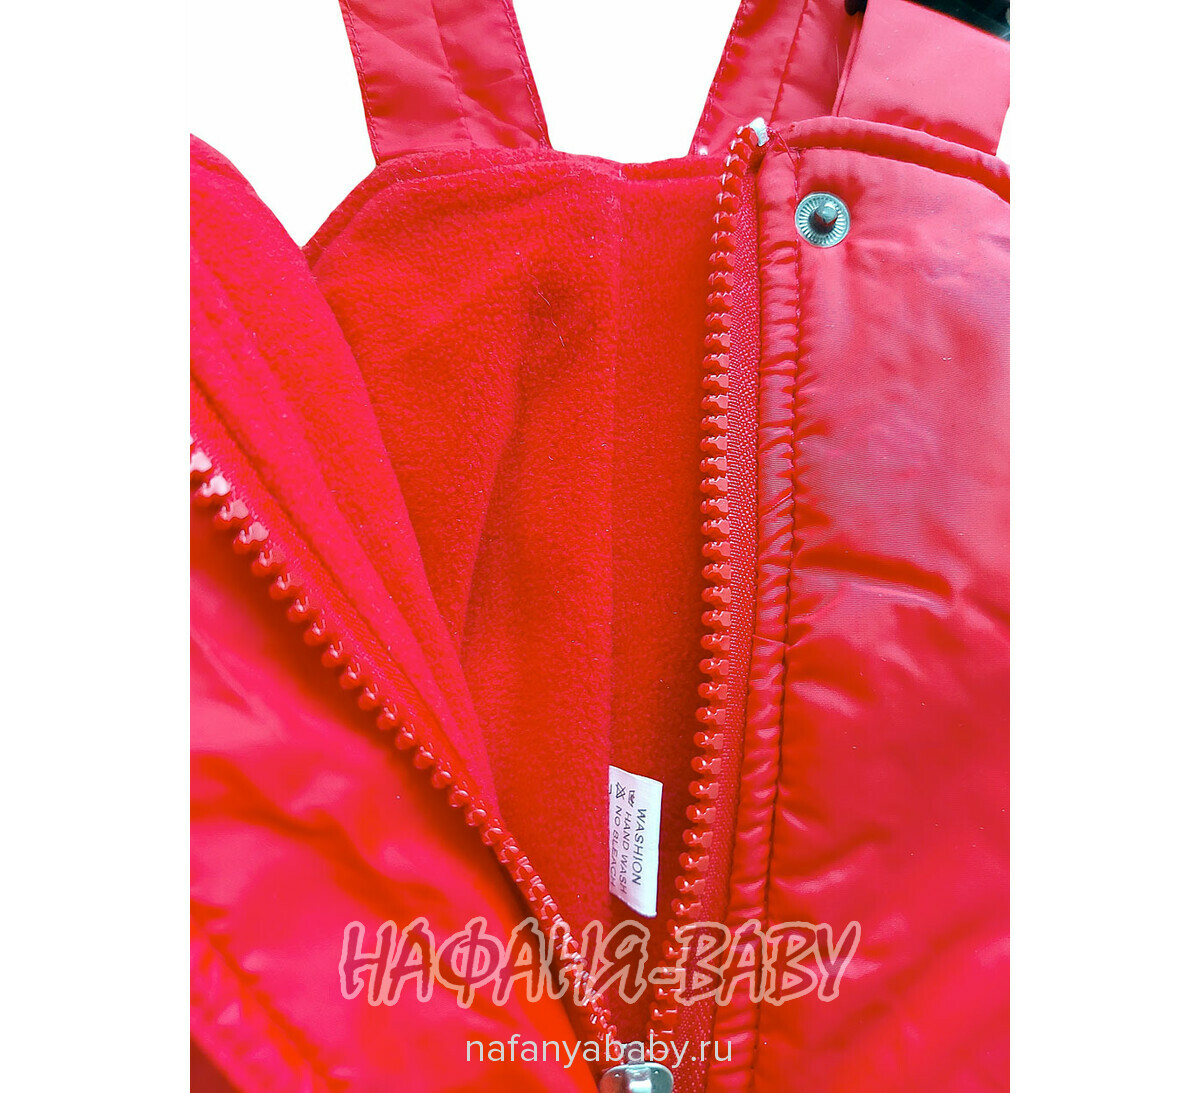 Детский зимний полукомбинезон, купить в интернет магазине Нафаня. арт: 020, цвет красный